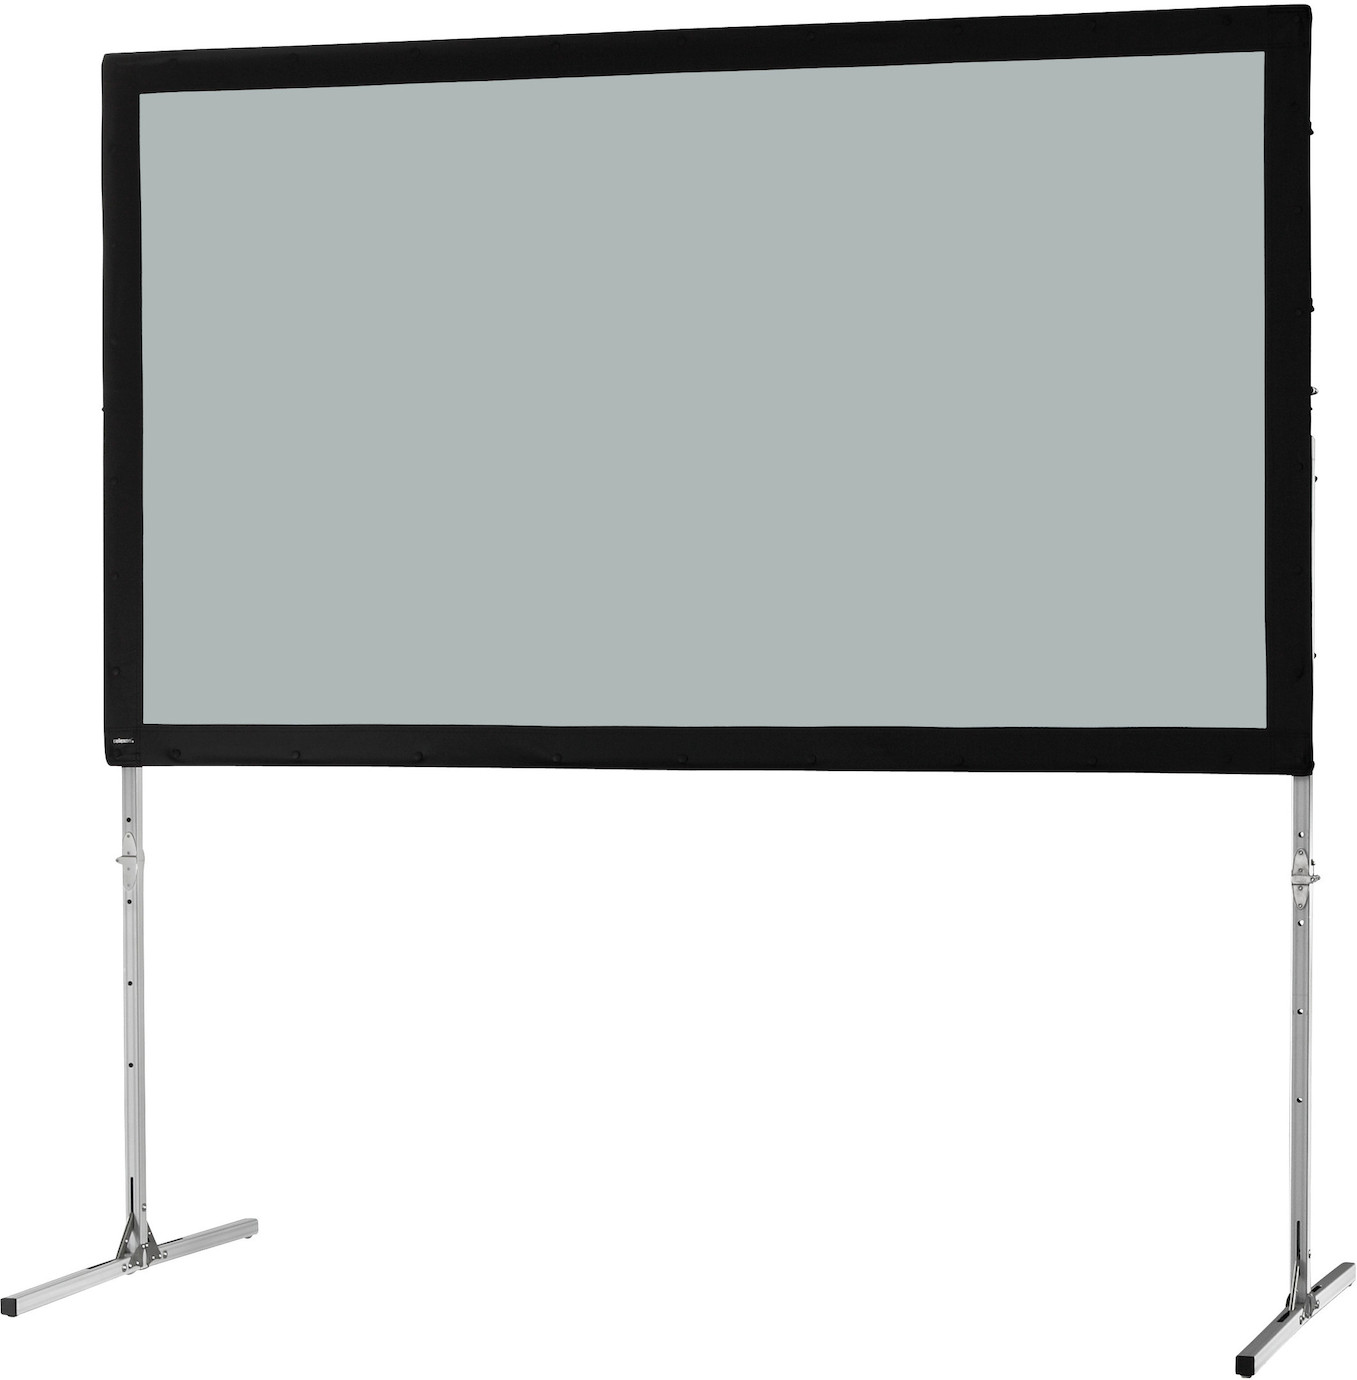 Ecran sur cadre celexon « Mobil Expert » 406 x 228 cm, projection par l'arrière